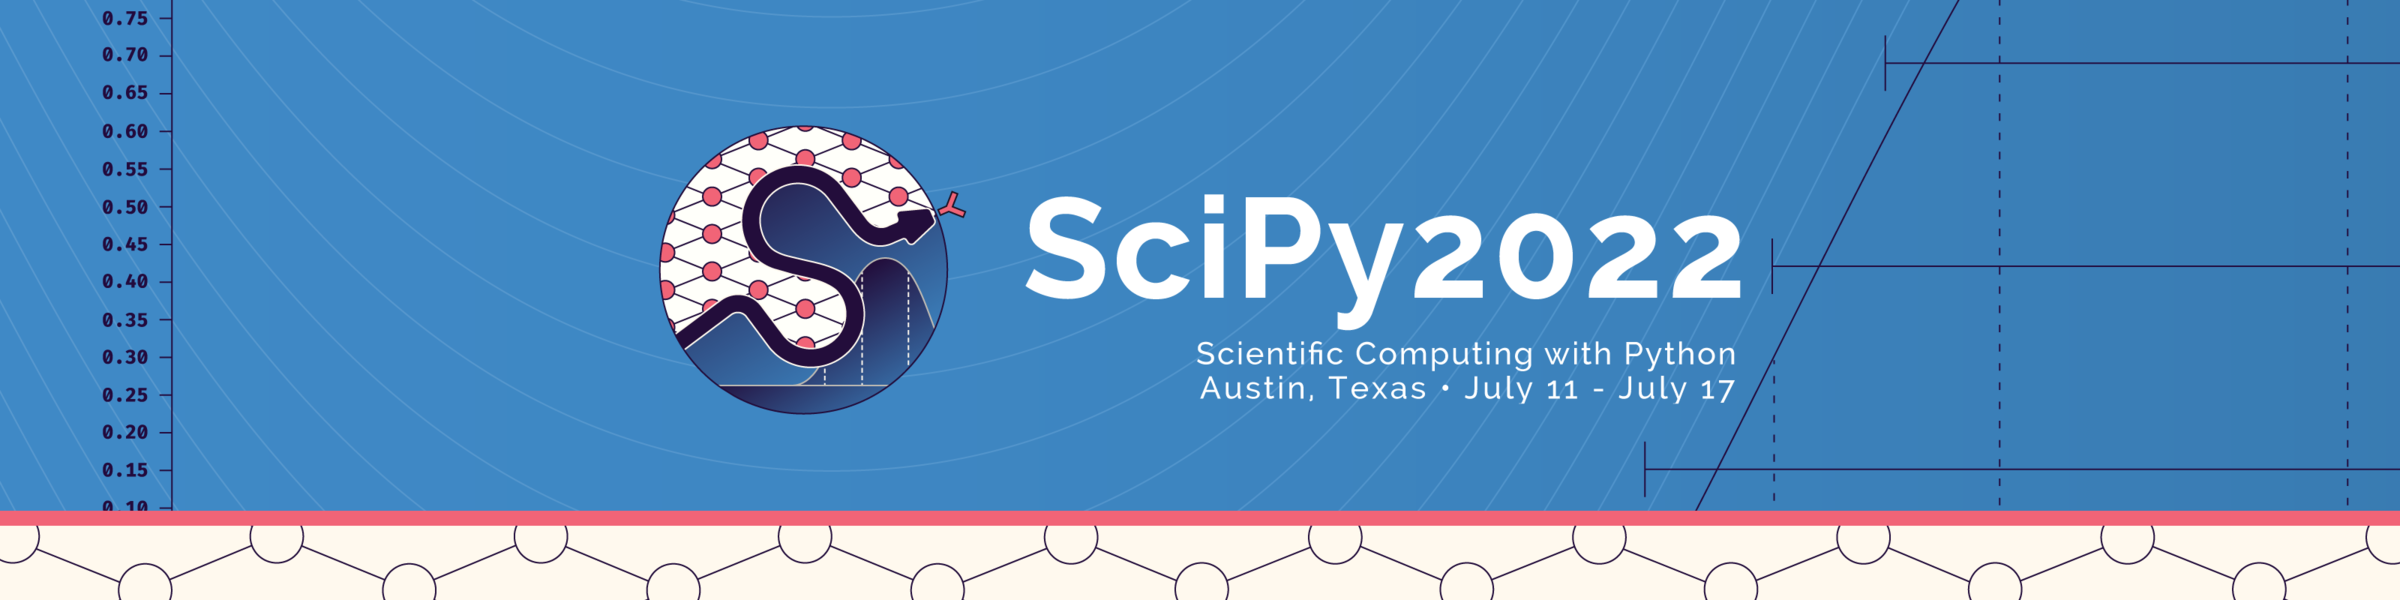 SciPy 2022